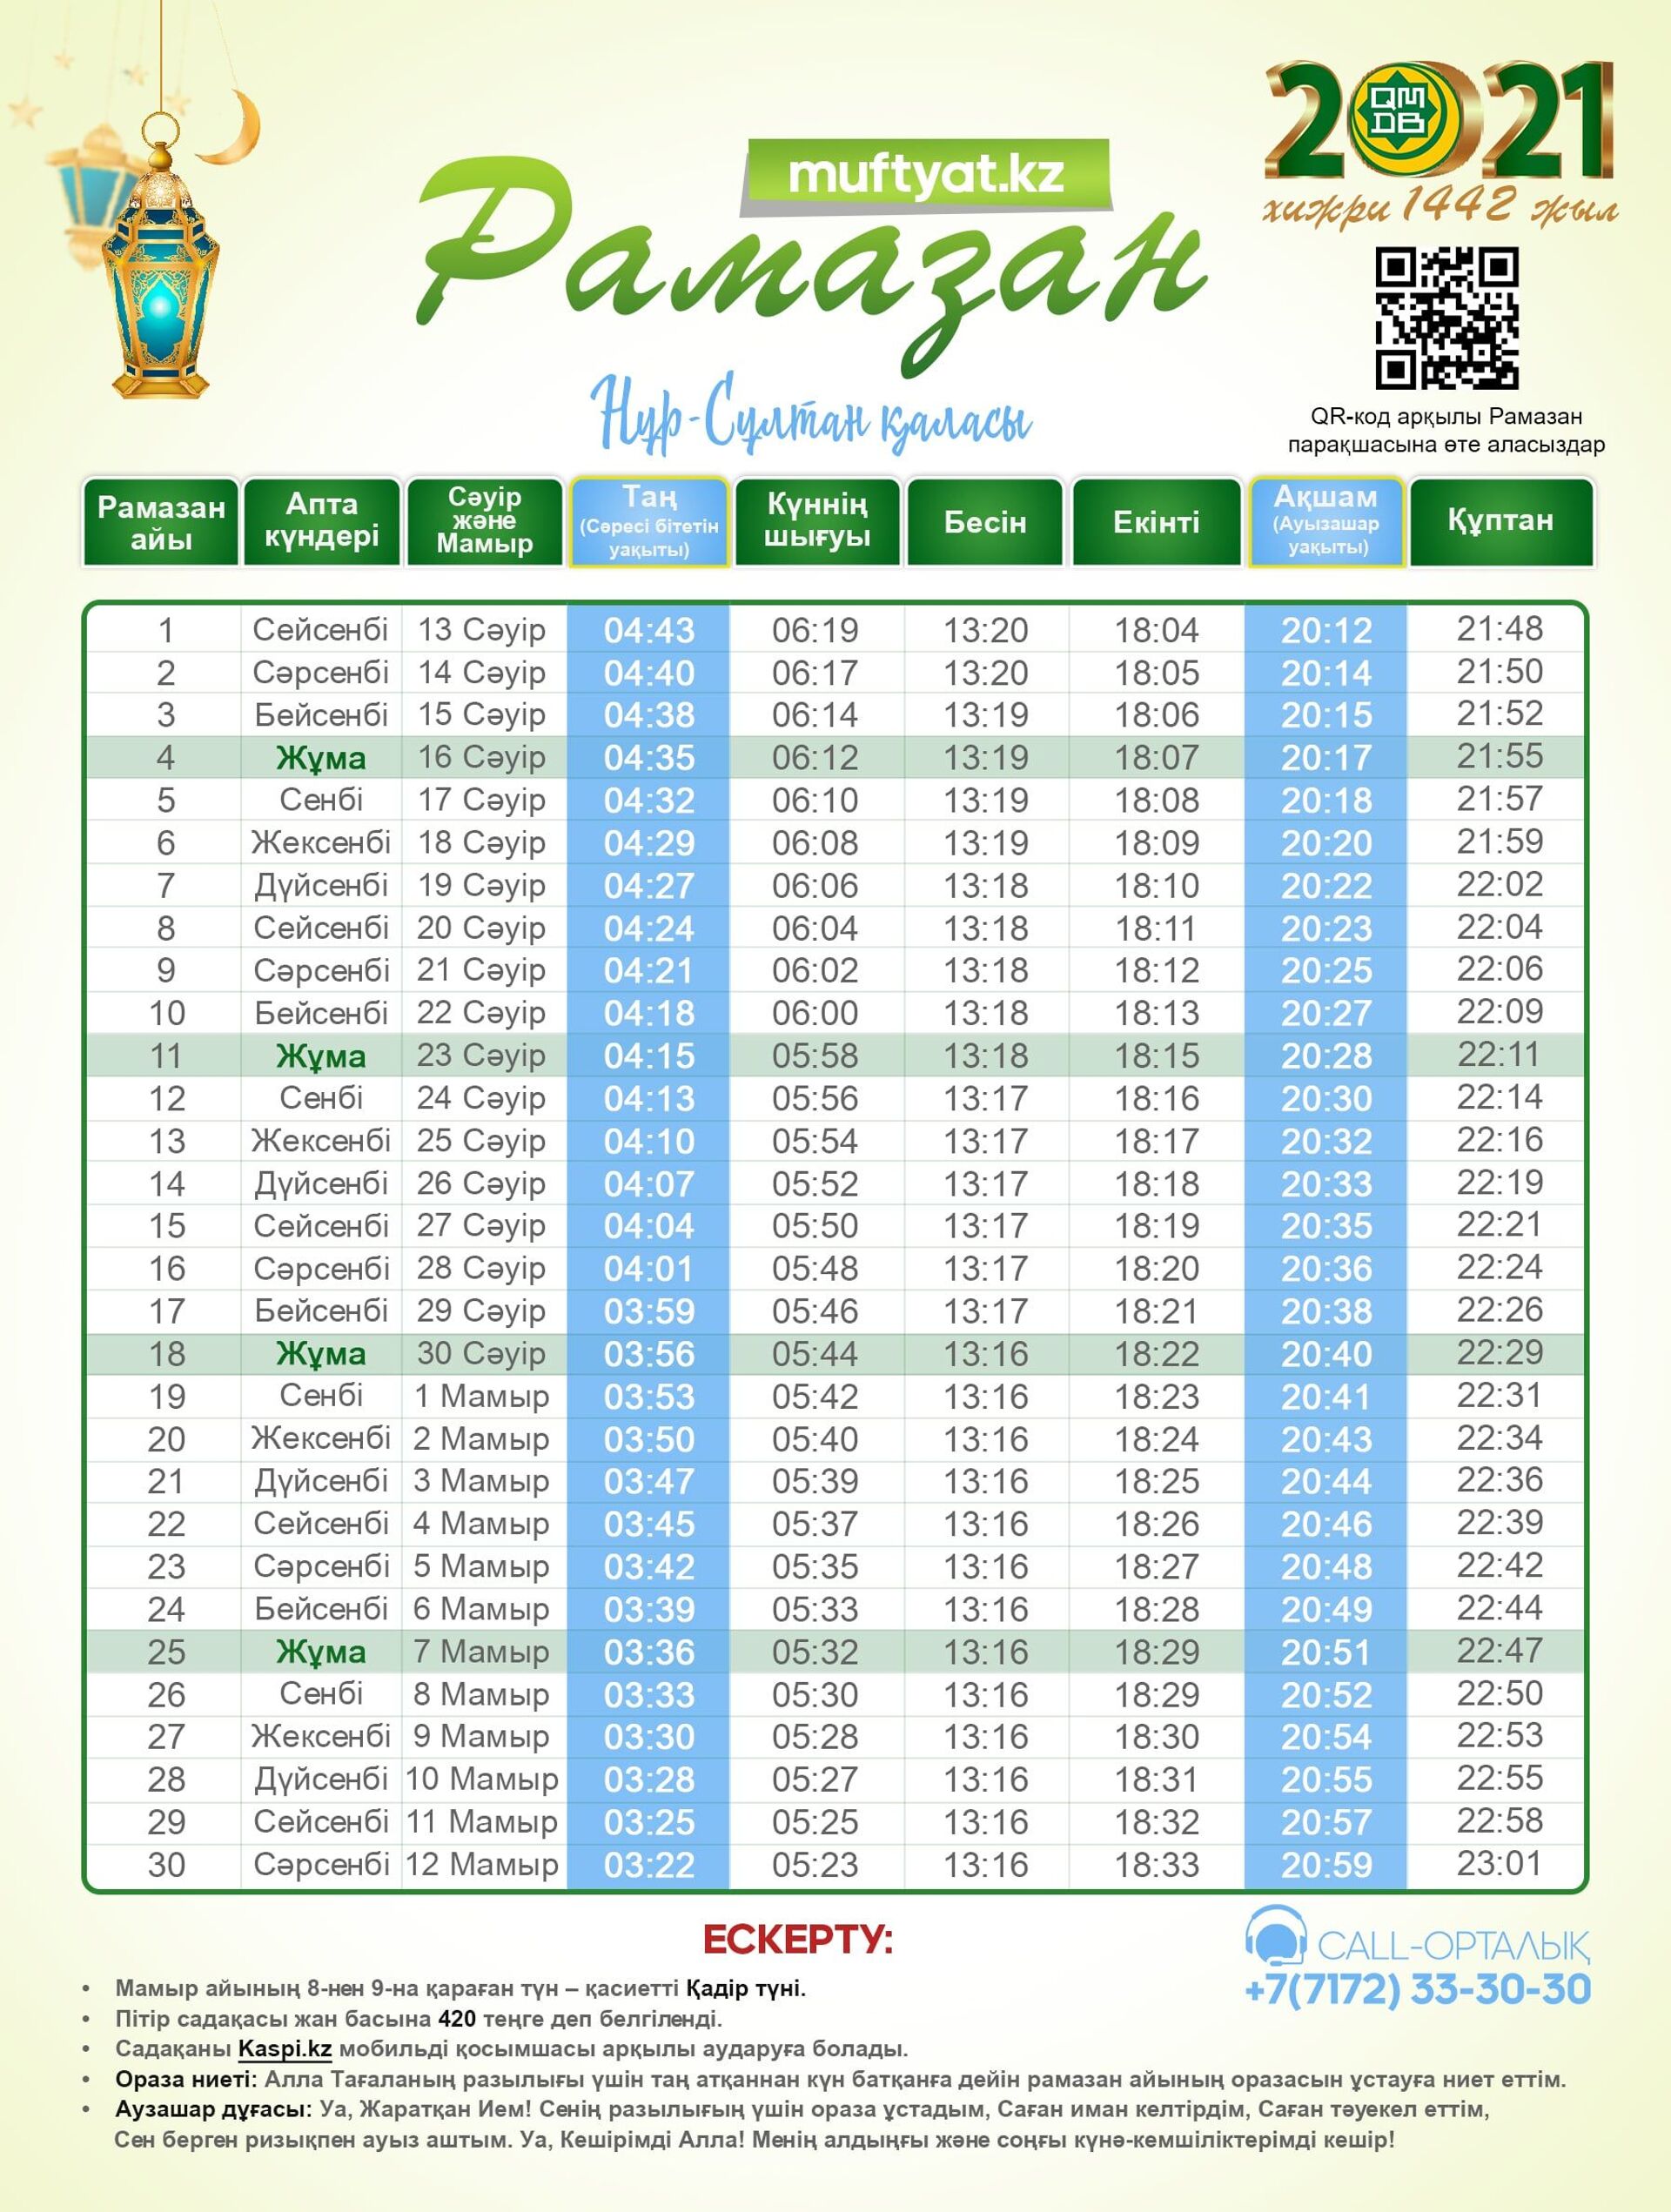 Рамазан-2021: опубликовано расписание времени поста и намаза в городах  Казахстана - 03.04.2021, Sputnik Казахстан